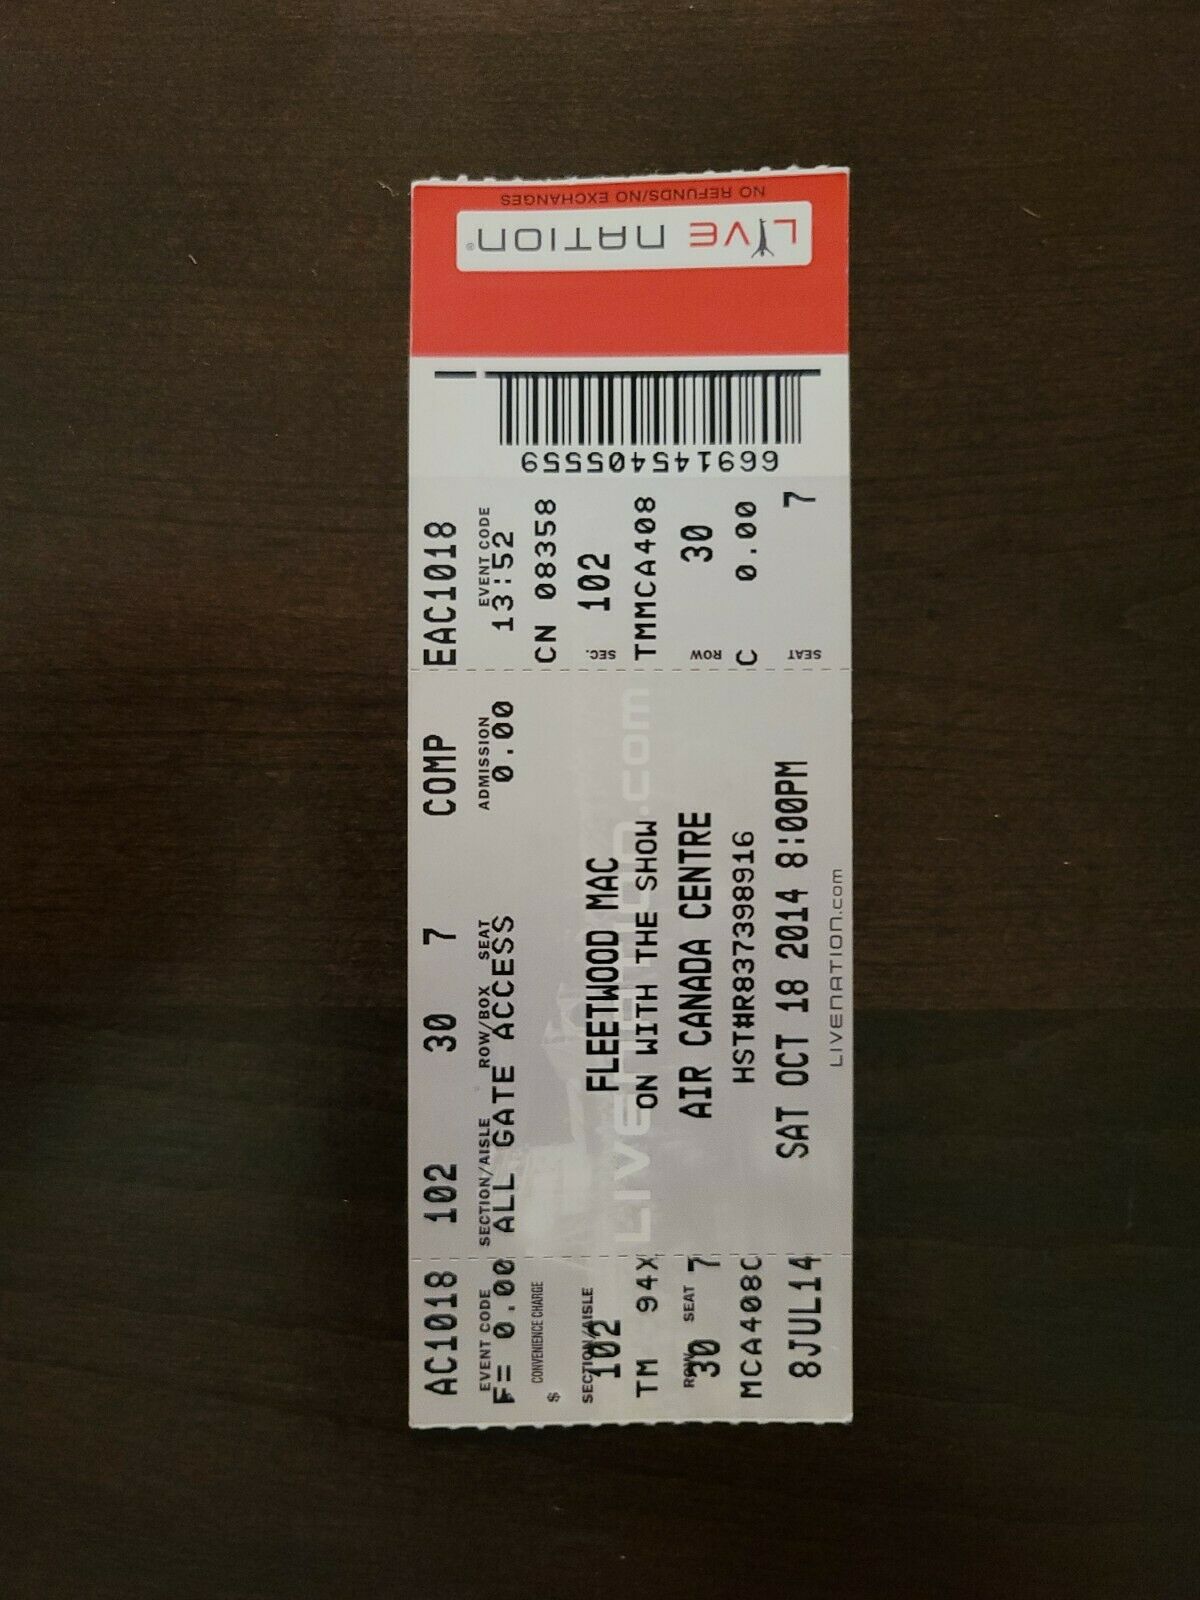 Fleetwood Mac 2014, Toronto Air Canada Centre Original Concert Ticket Stub